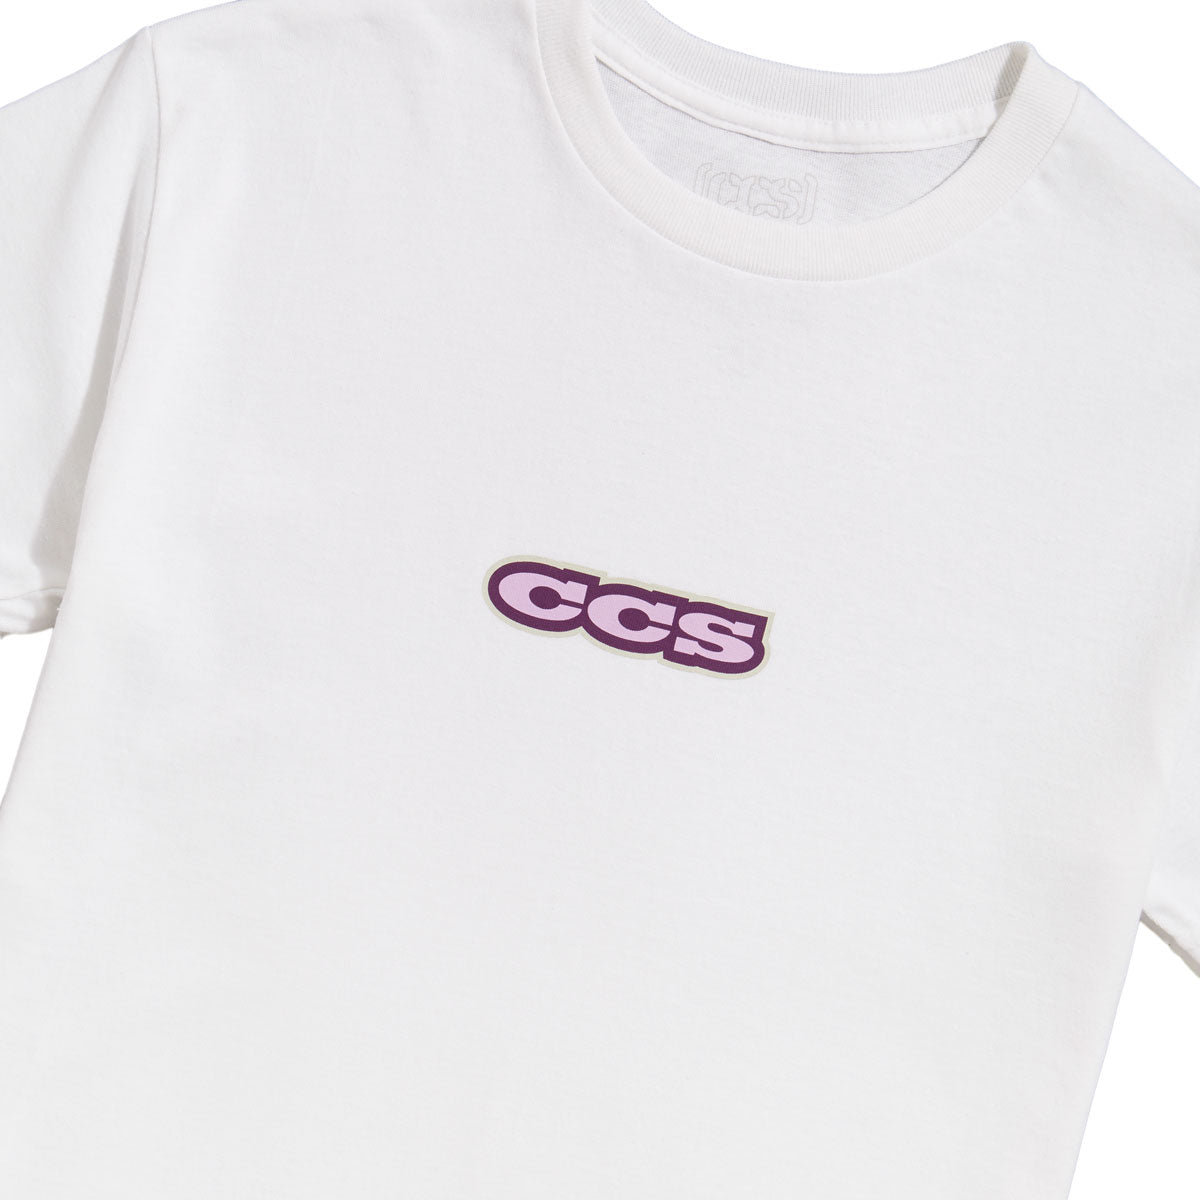 CCS 96 Logo T-Shirt - White/Lilac/Silver image 2